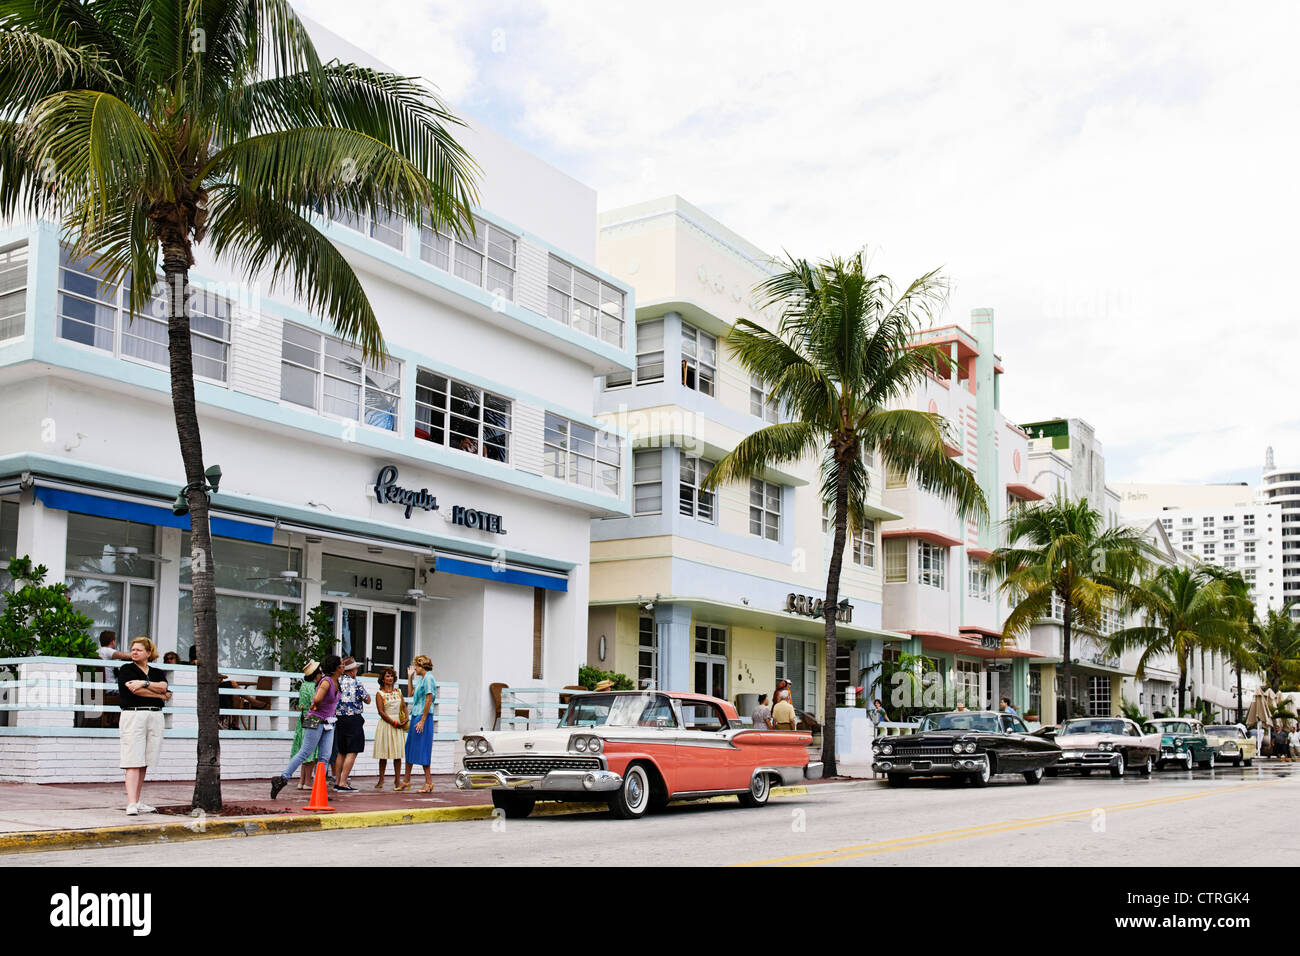 American Classic cars, l'hôtel Avalon, Ocean Drive, Miami quartier Art déco de South Beach, Florida, USA Banque D'Images